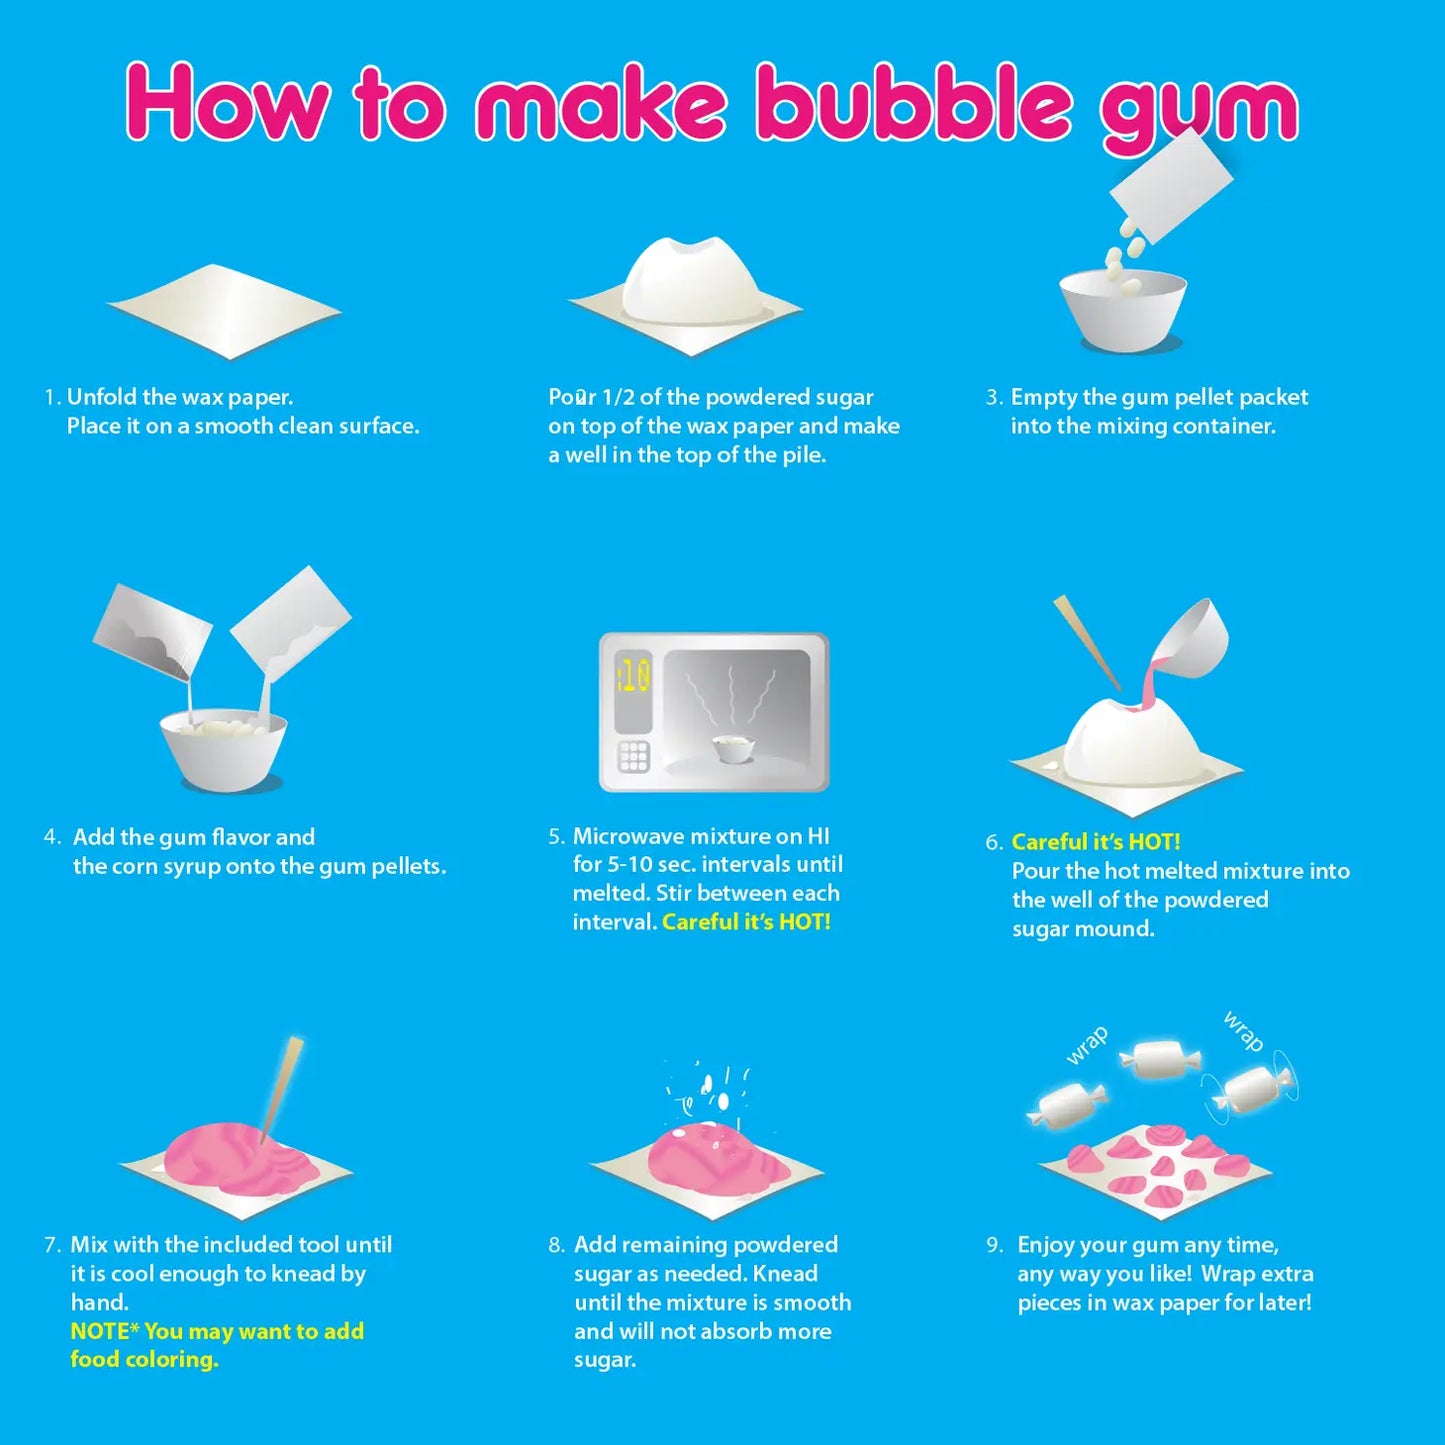 Bubble Gum Chemistry Kit